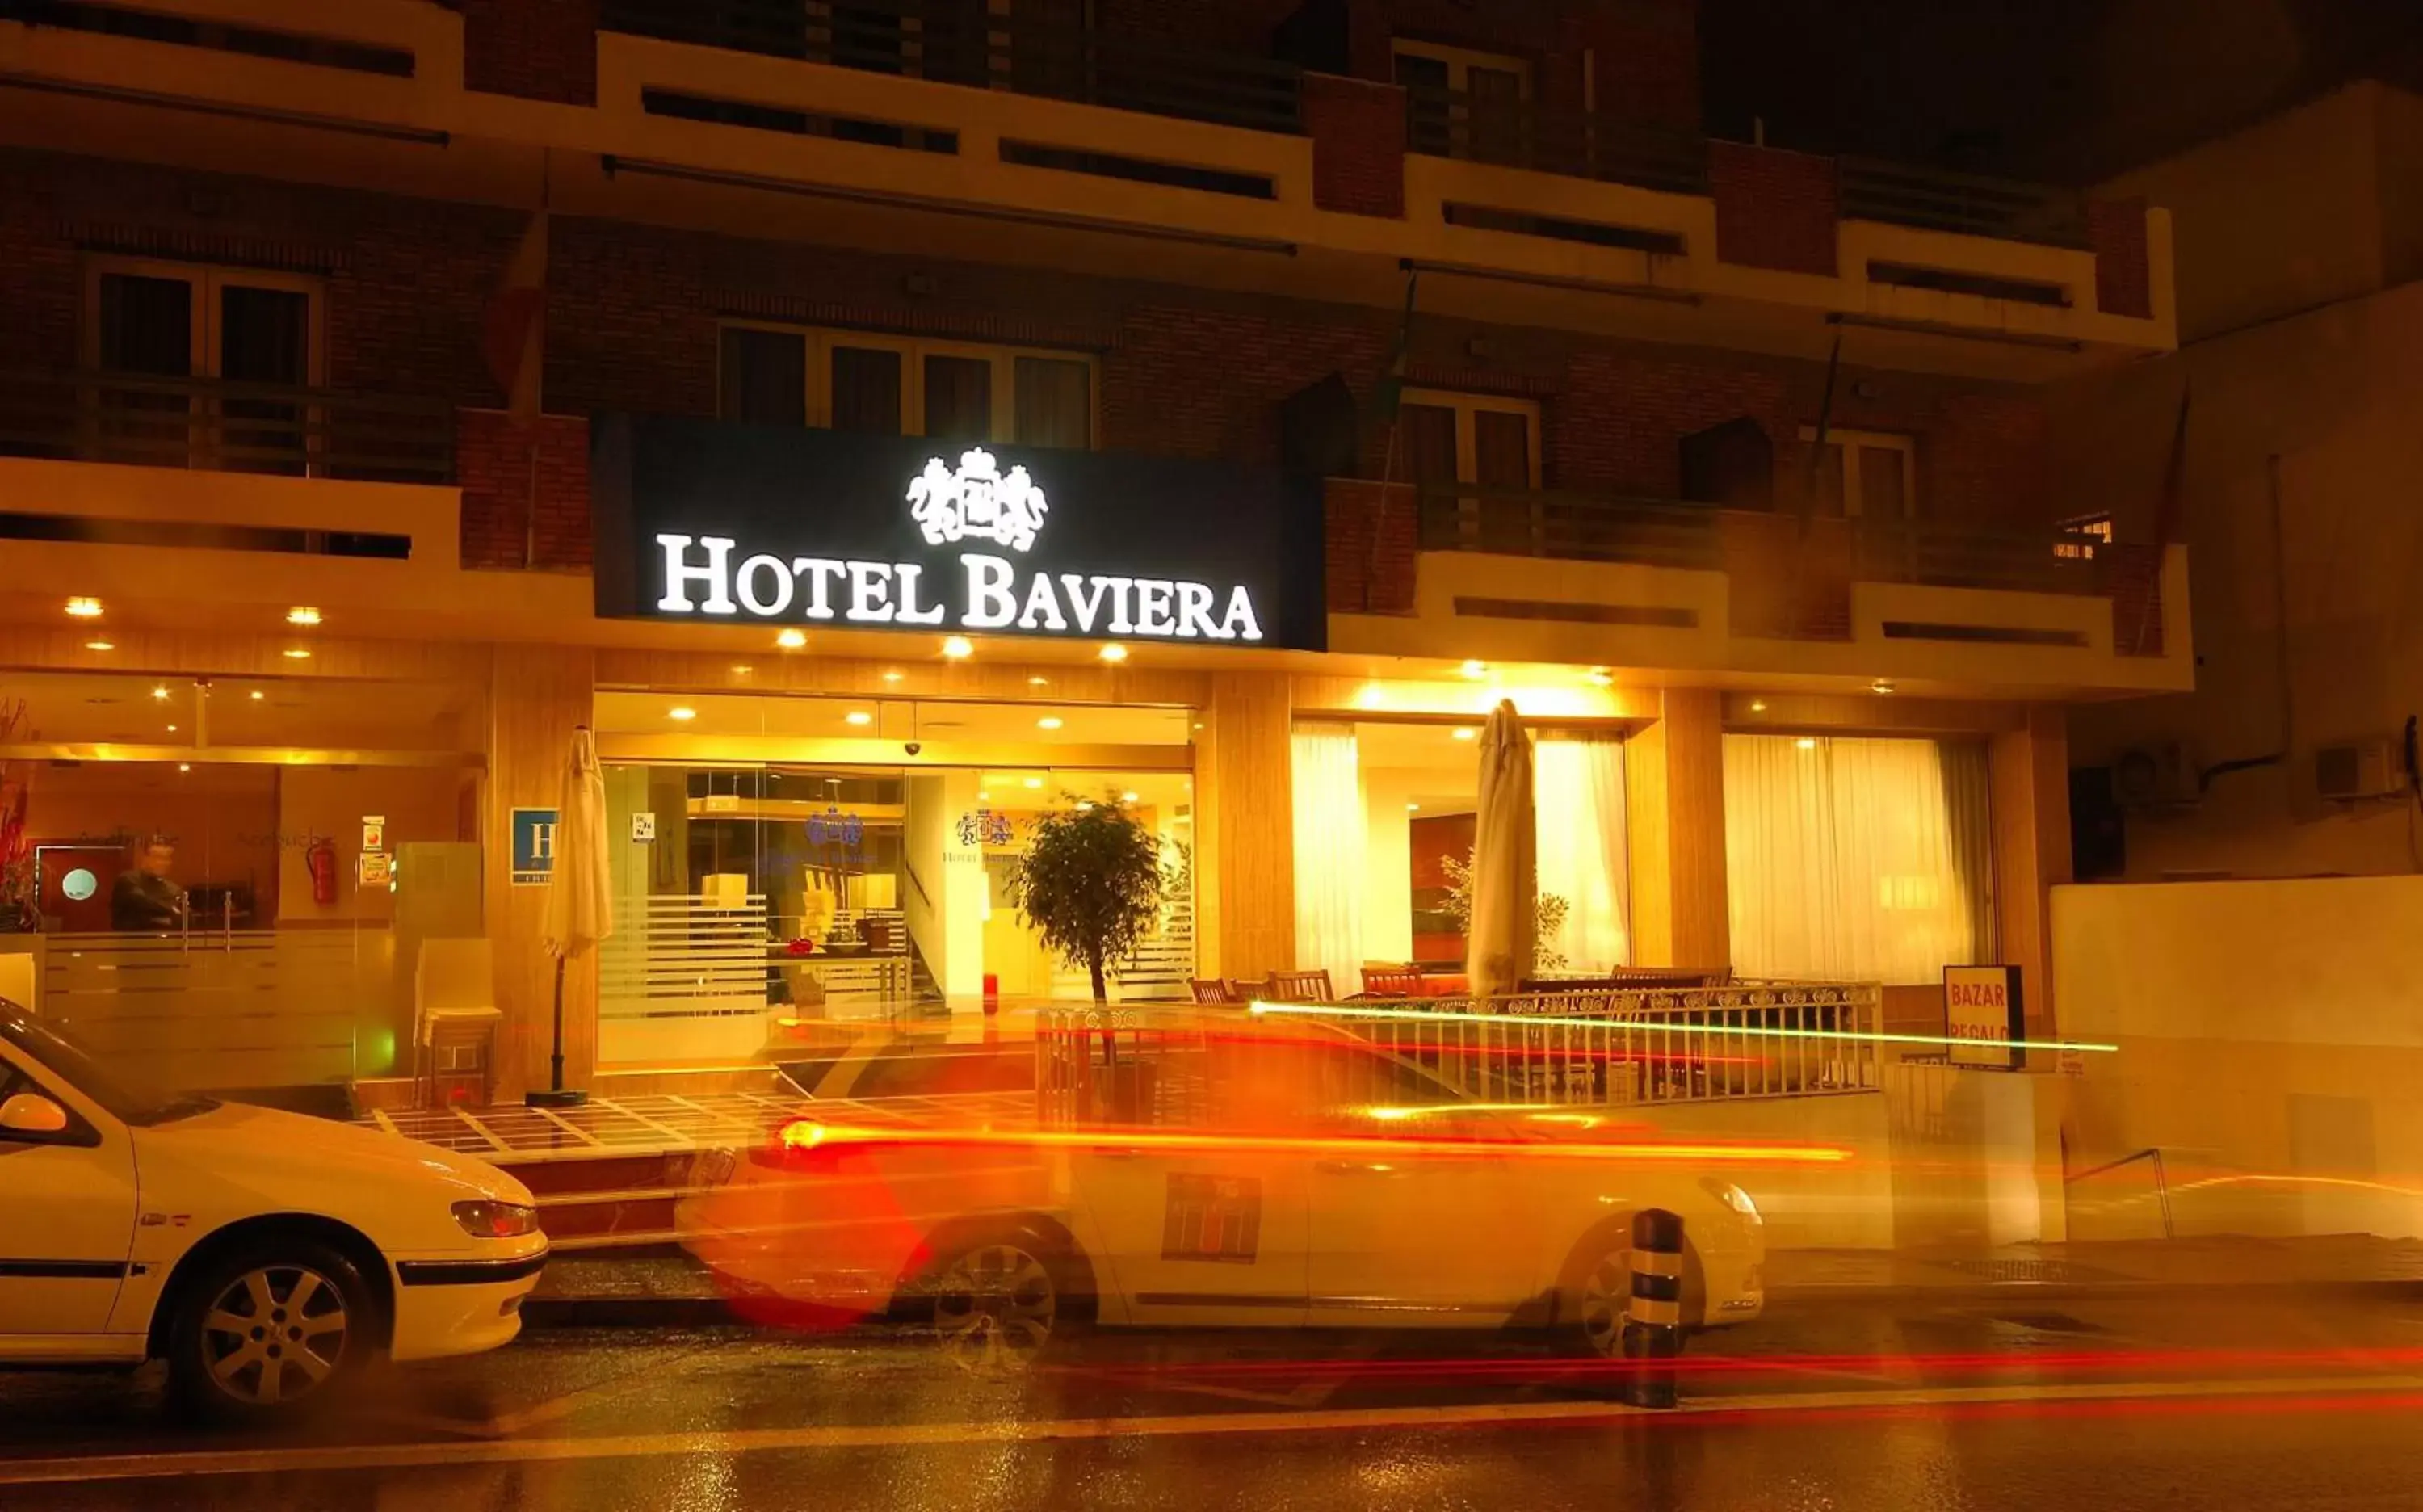 Facade/entrance in Hotel Baviera